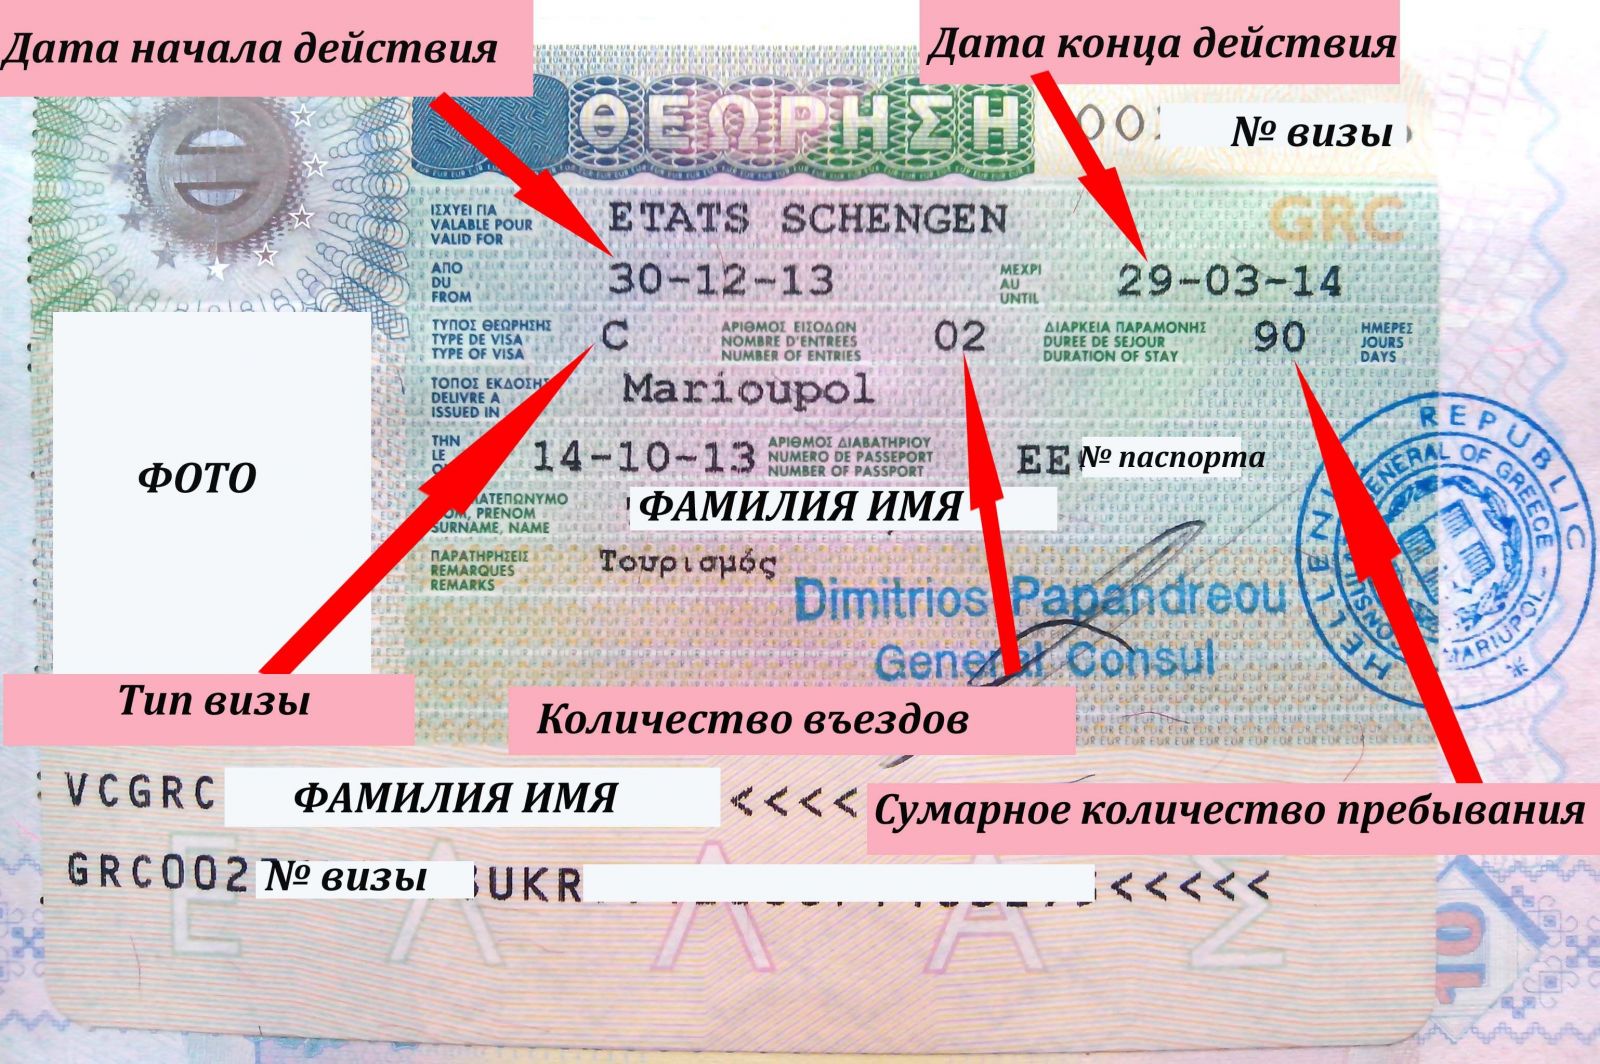 Плюсы заказа услуги по оформлению шенгенской визы